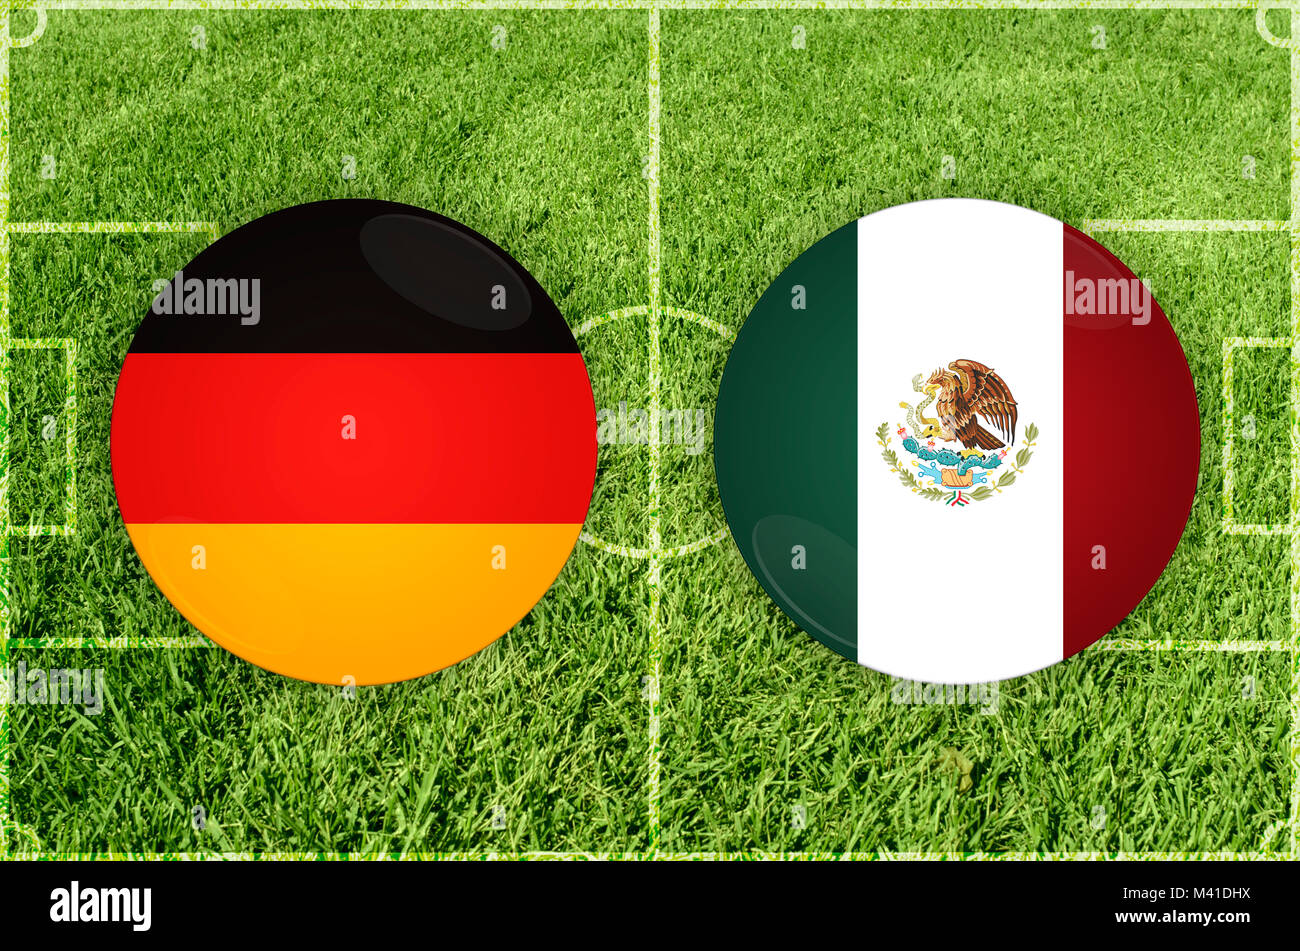 Germany vs Mexico football match Stock Photo Alamy